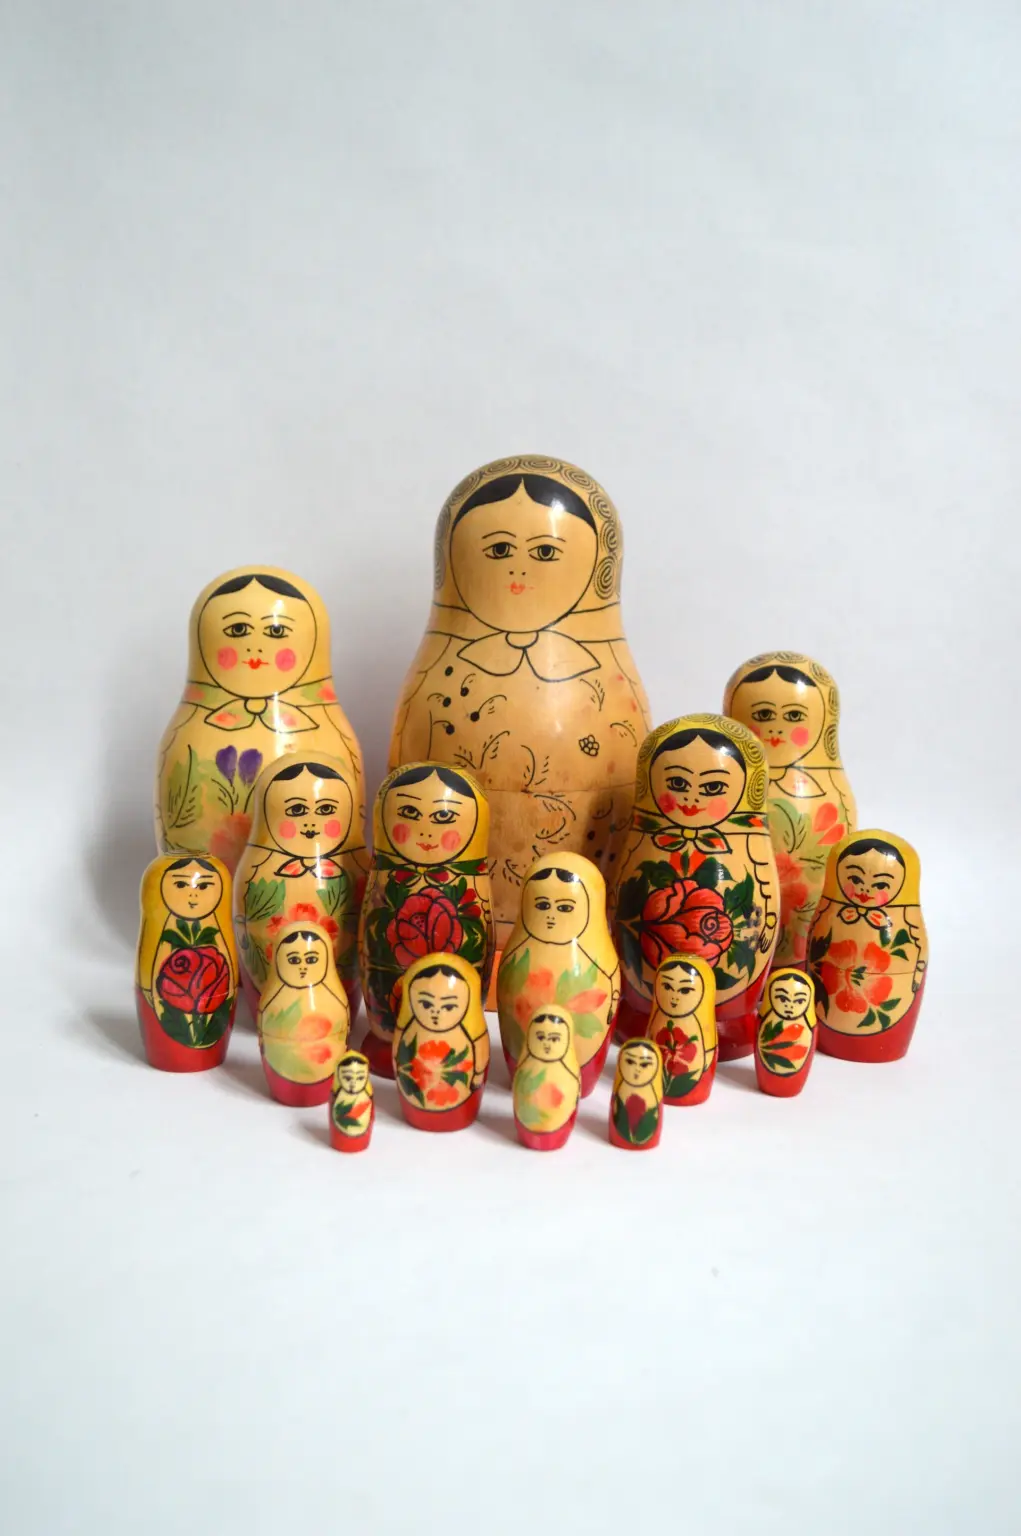 Matryoshka Doll Symbolism